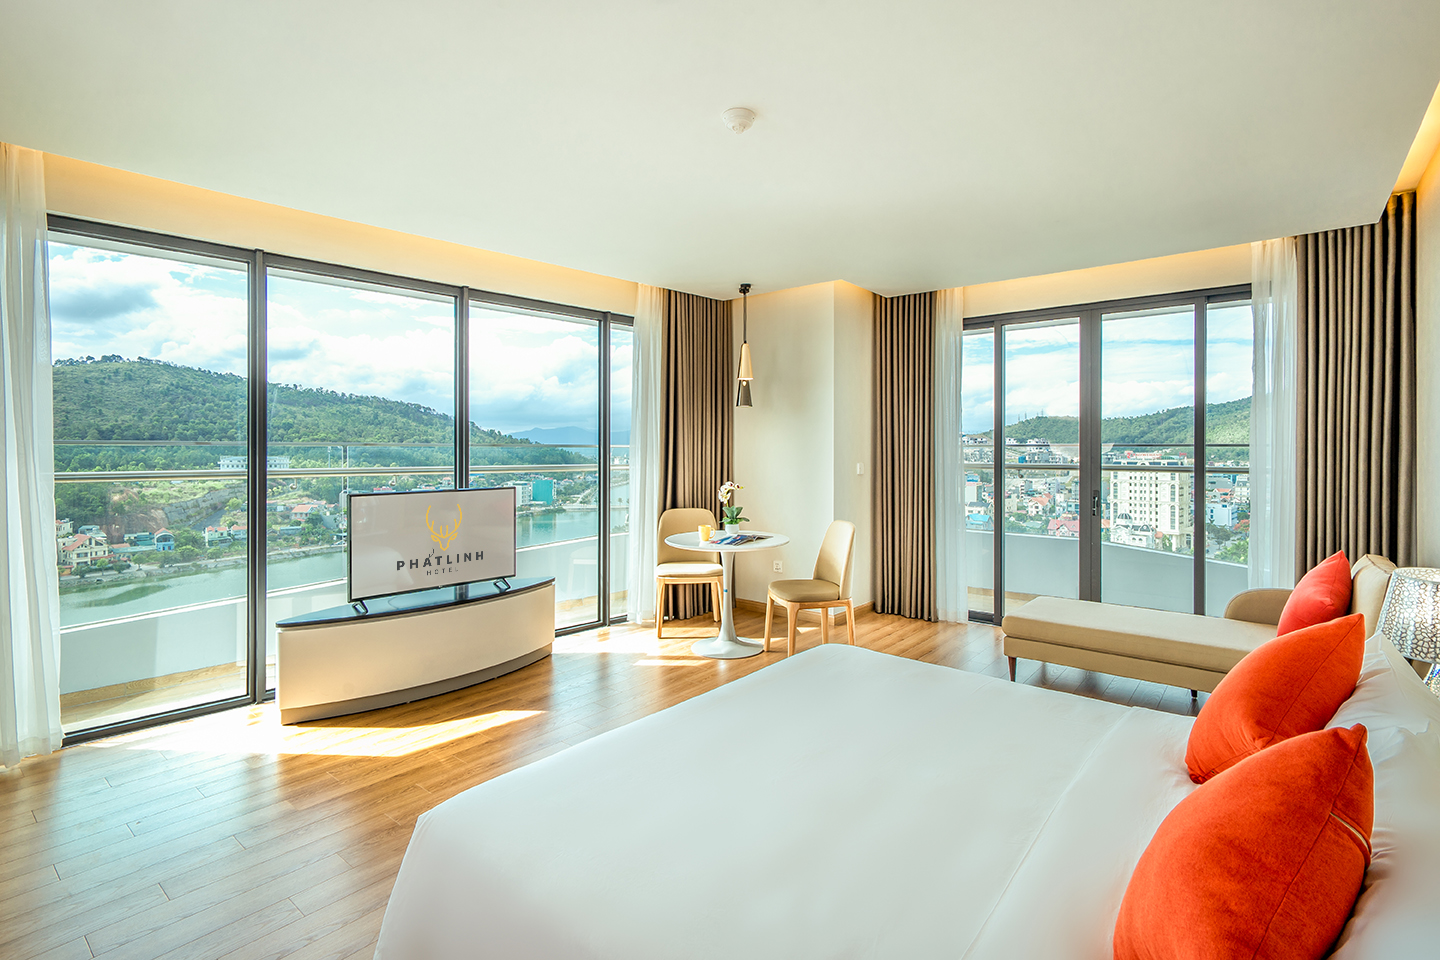 Ngắm nhìn khung cảnh kì vĩ của miền di sản từ khách sạn Phát Linh Hạ Long